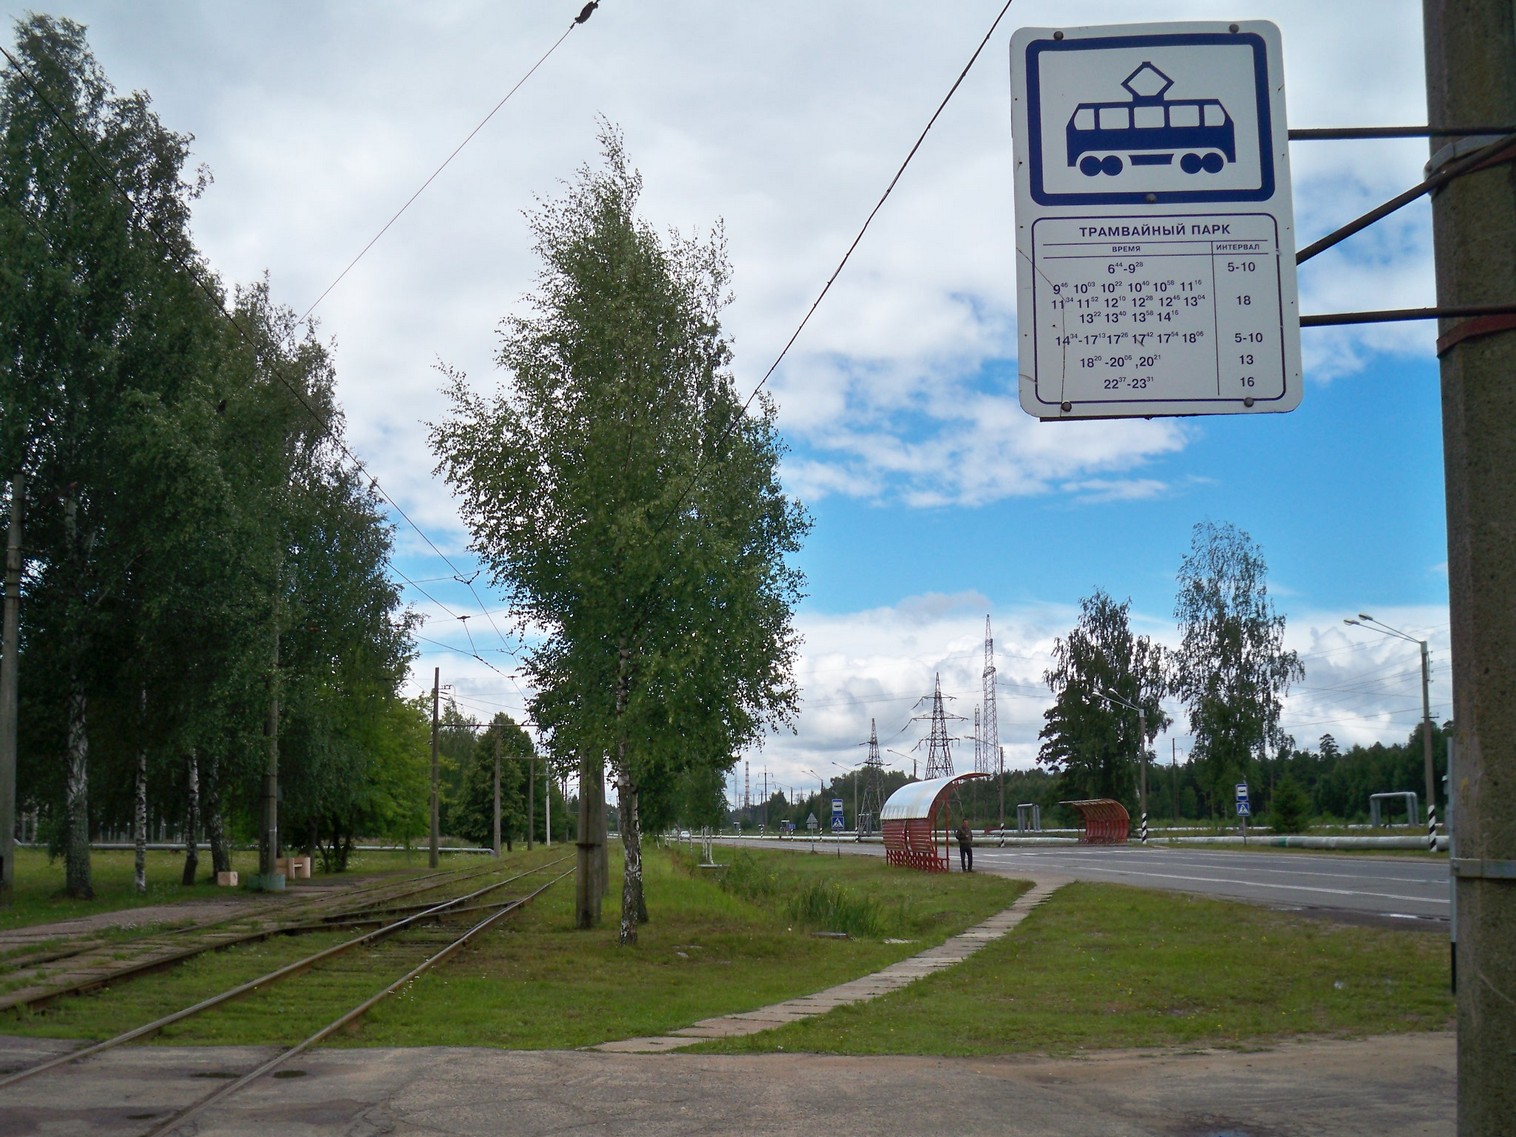 Новополоцкий трамвай  —  фотографии, сделанные в 2013 году (часть 2)